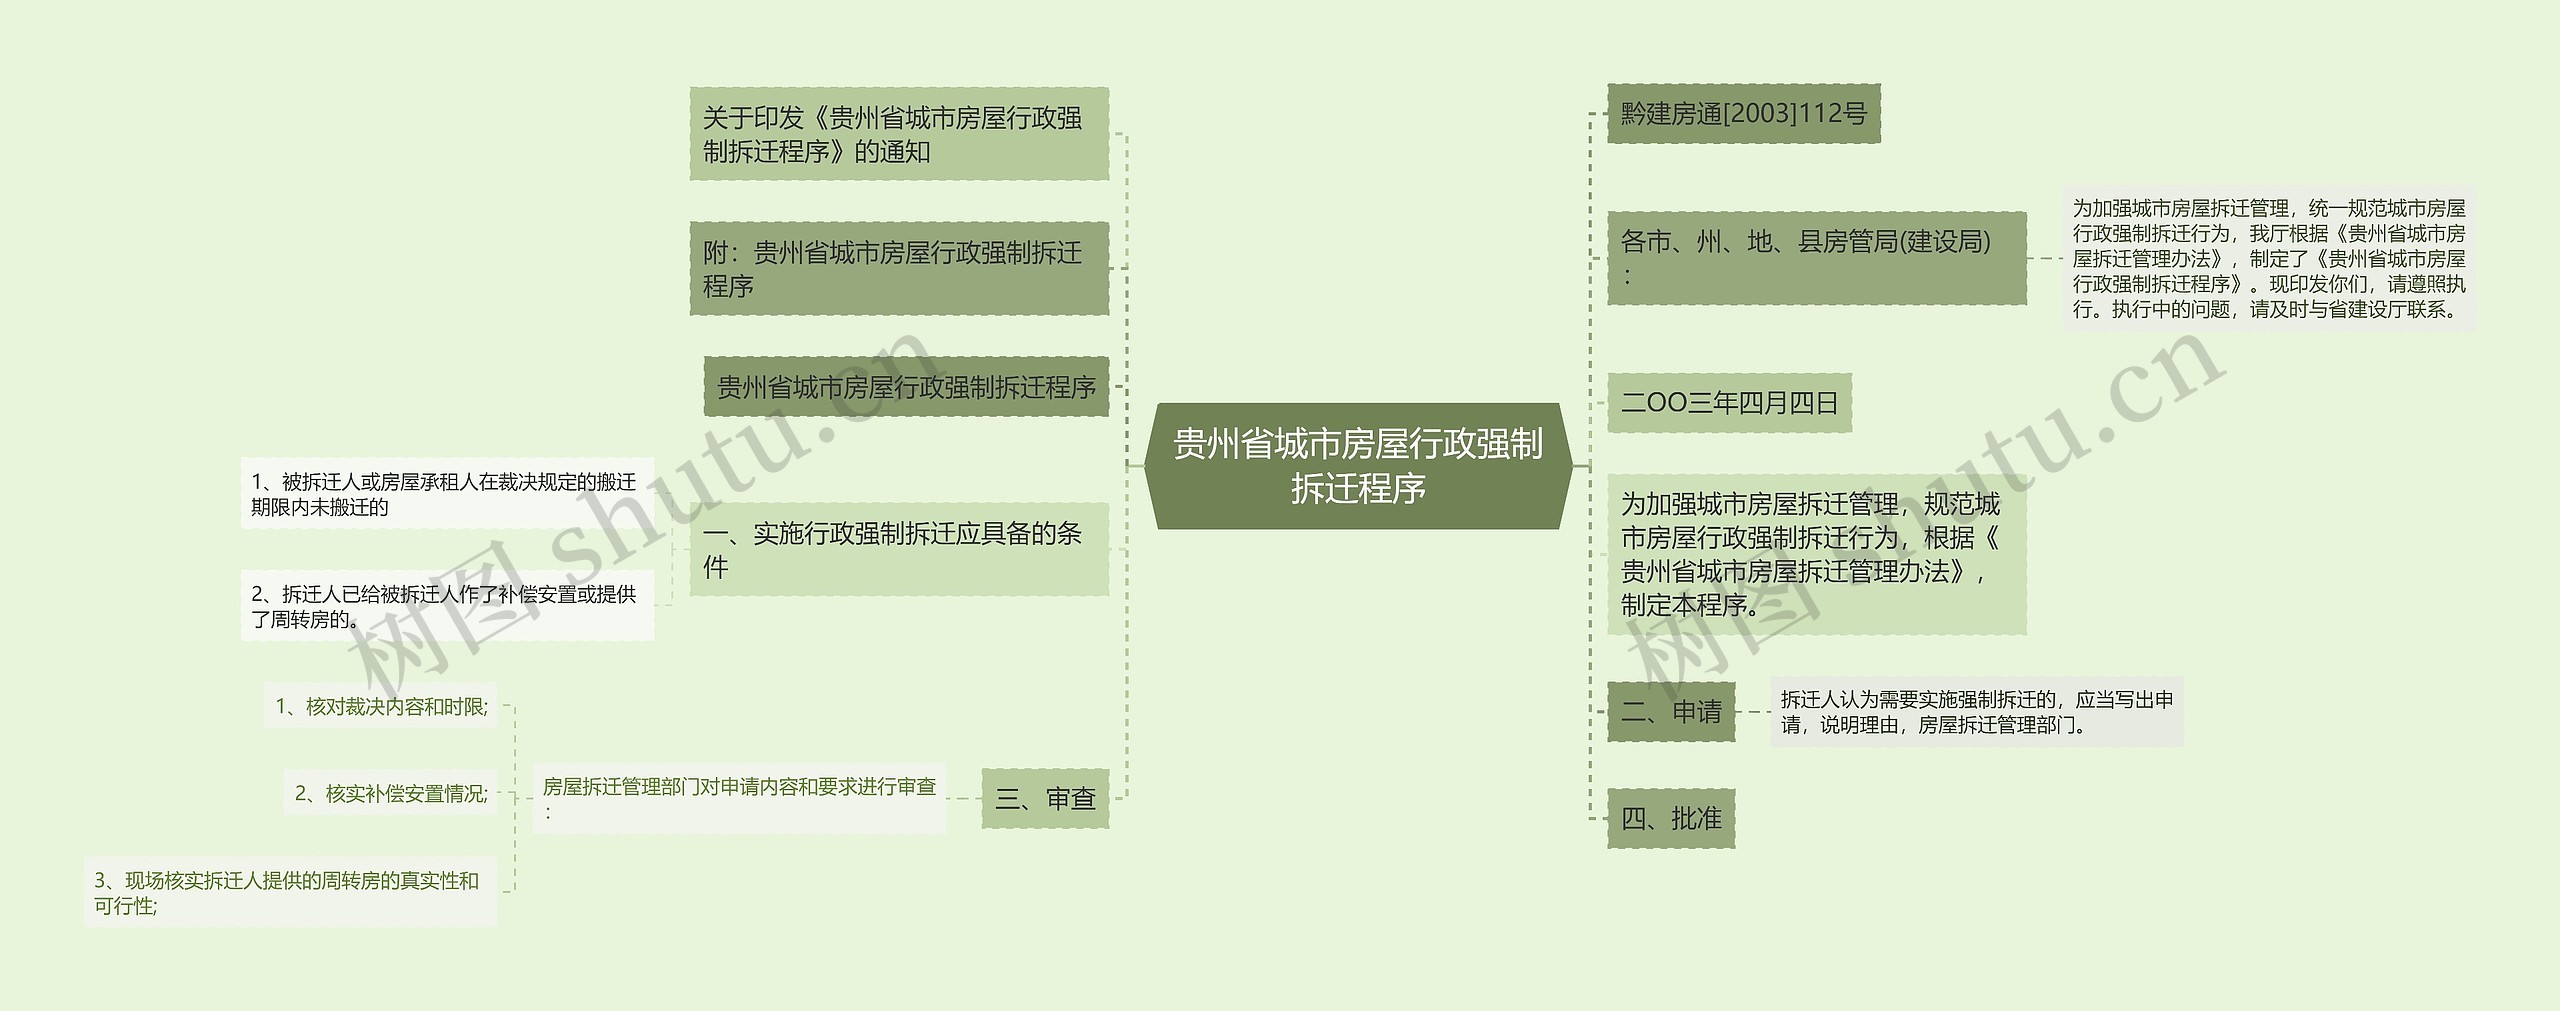 贵州省城市房屋行政强制拆迁程序思维导图